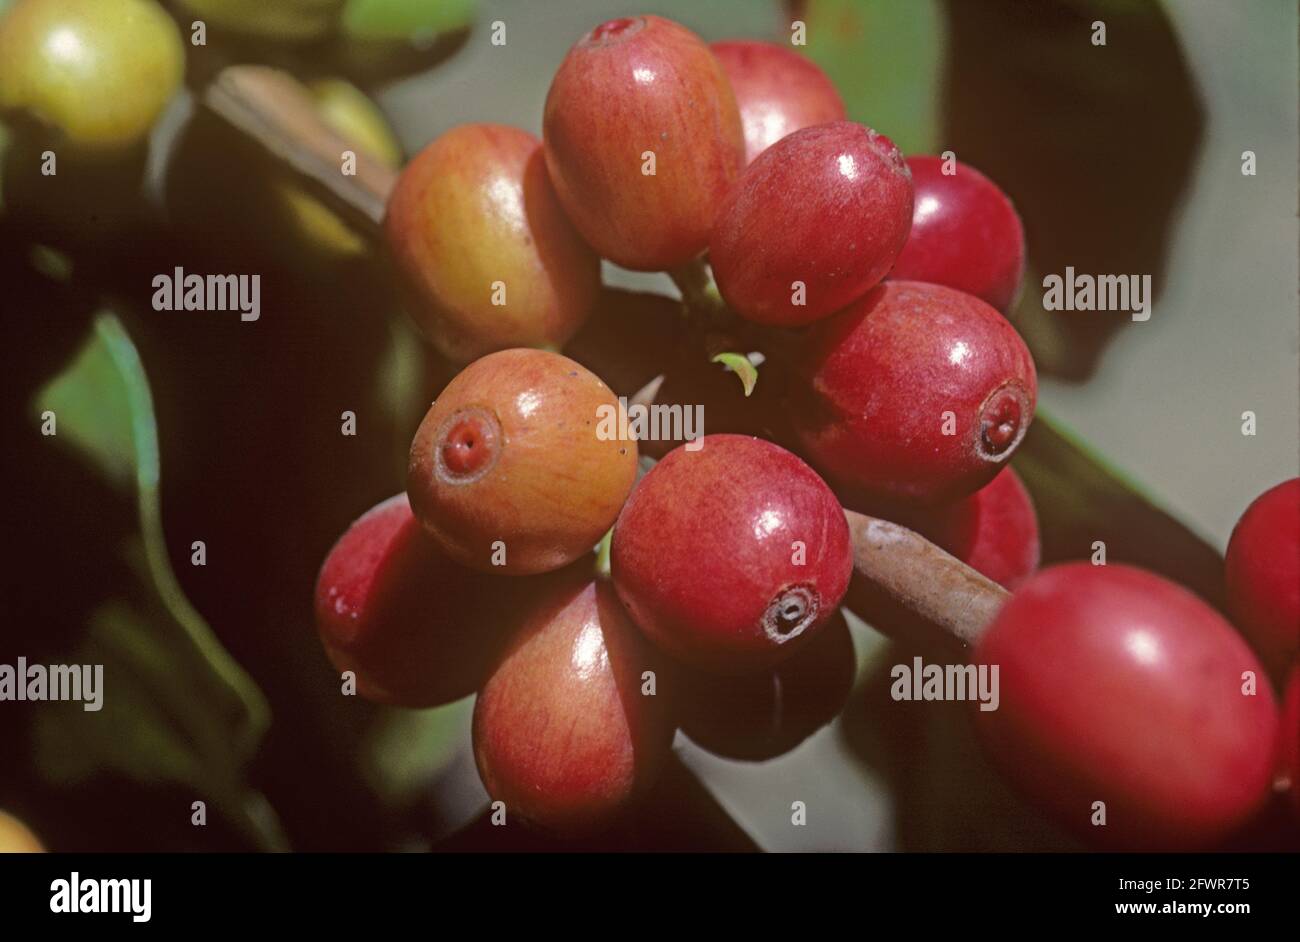 Ripe red arabica coffee (Coffea arabica) berries on the bush, Colombia Stock Photo